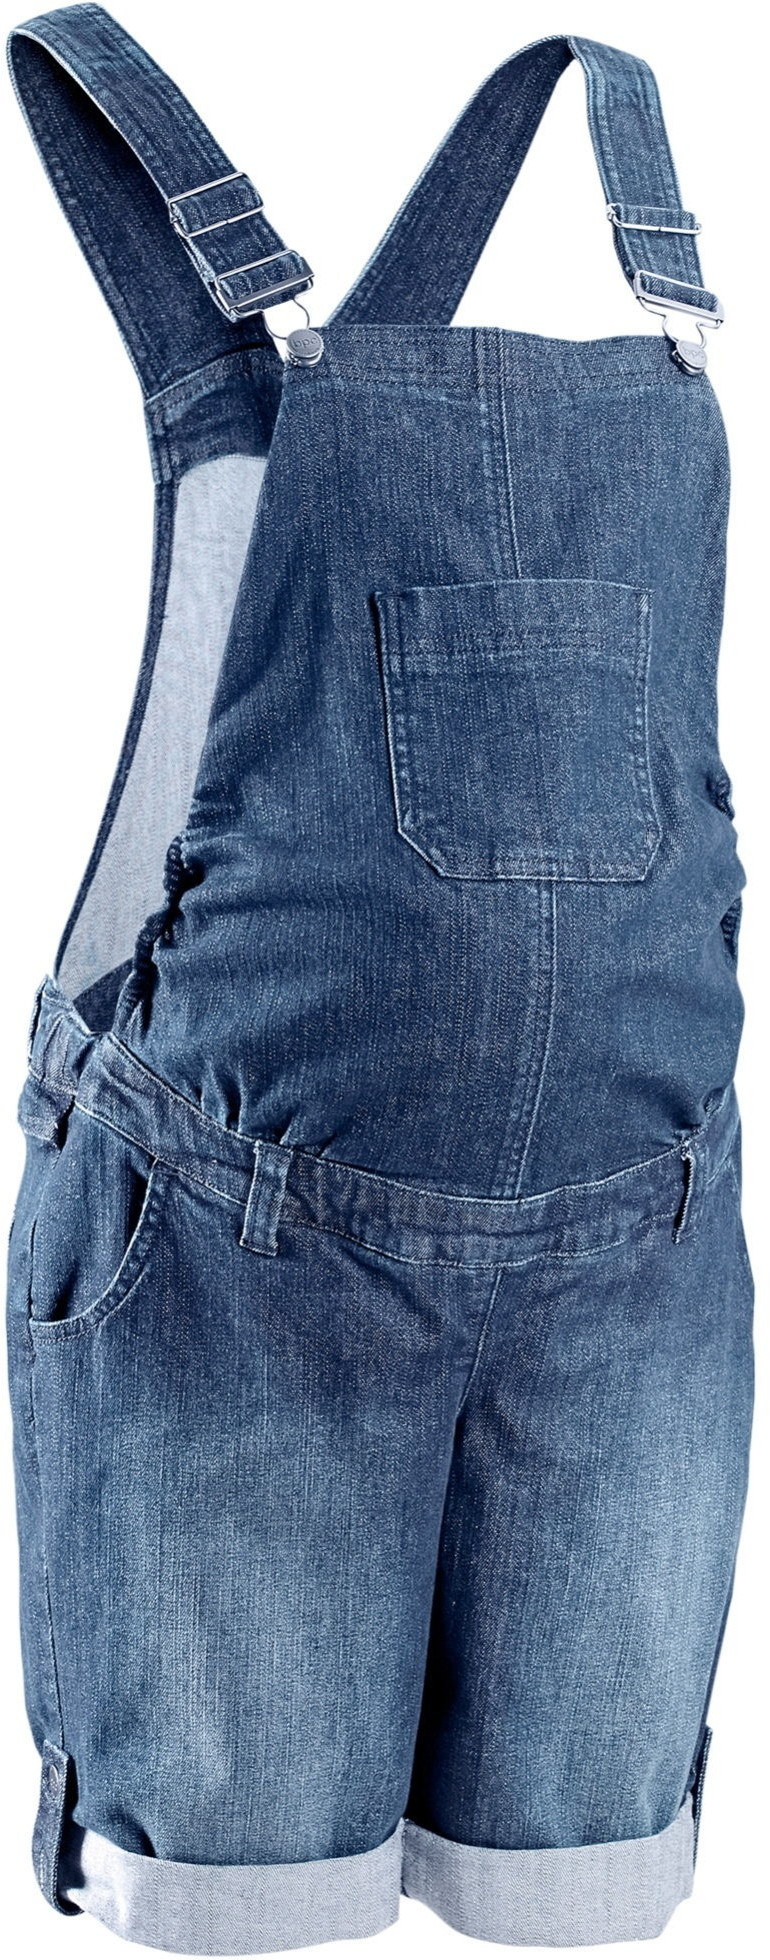 Spodnie damskie - Ceny, Opinie, Sklepy